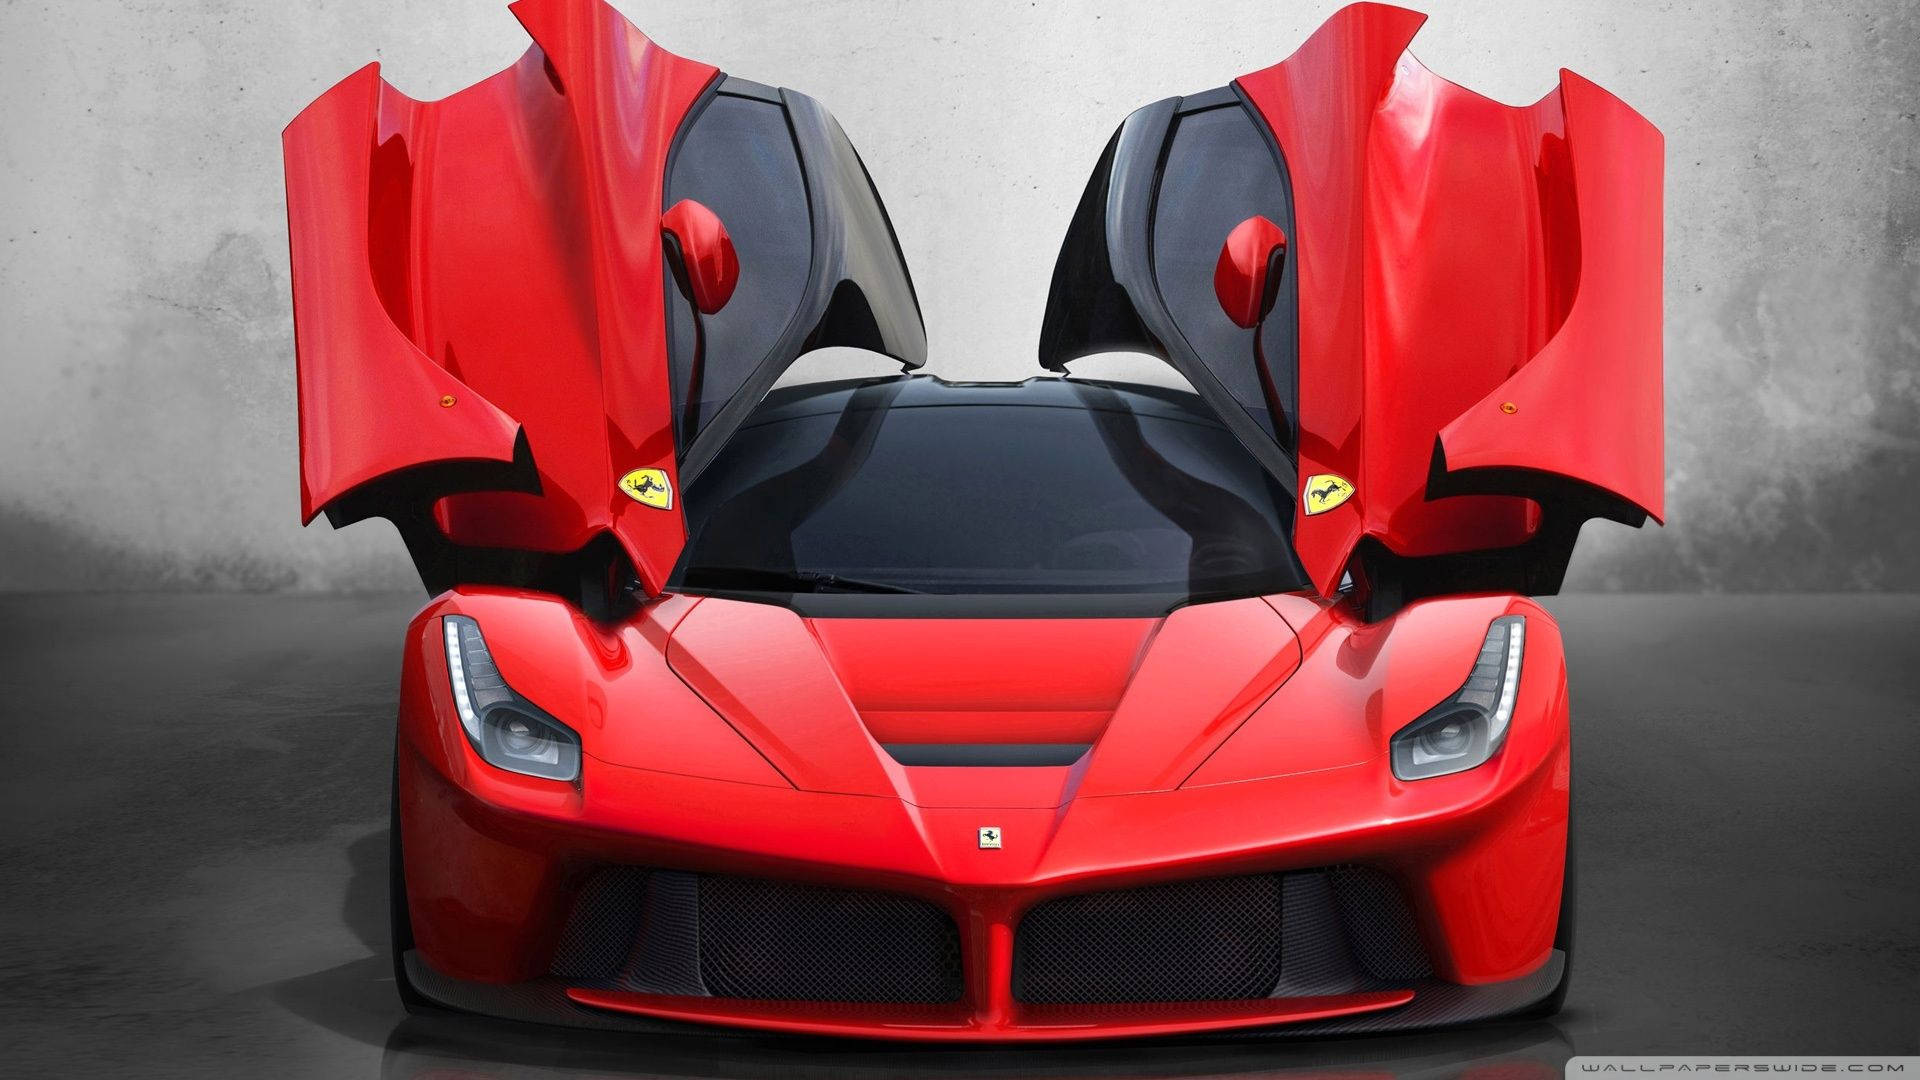 The Elegance of a Ferrari Wallpaper